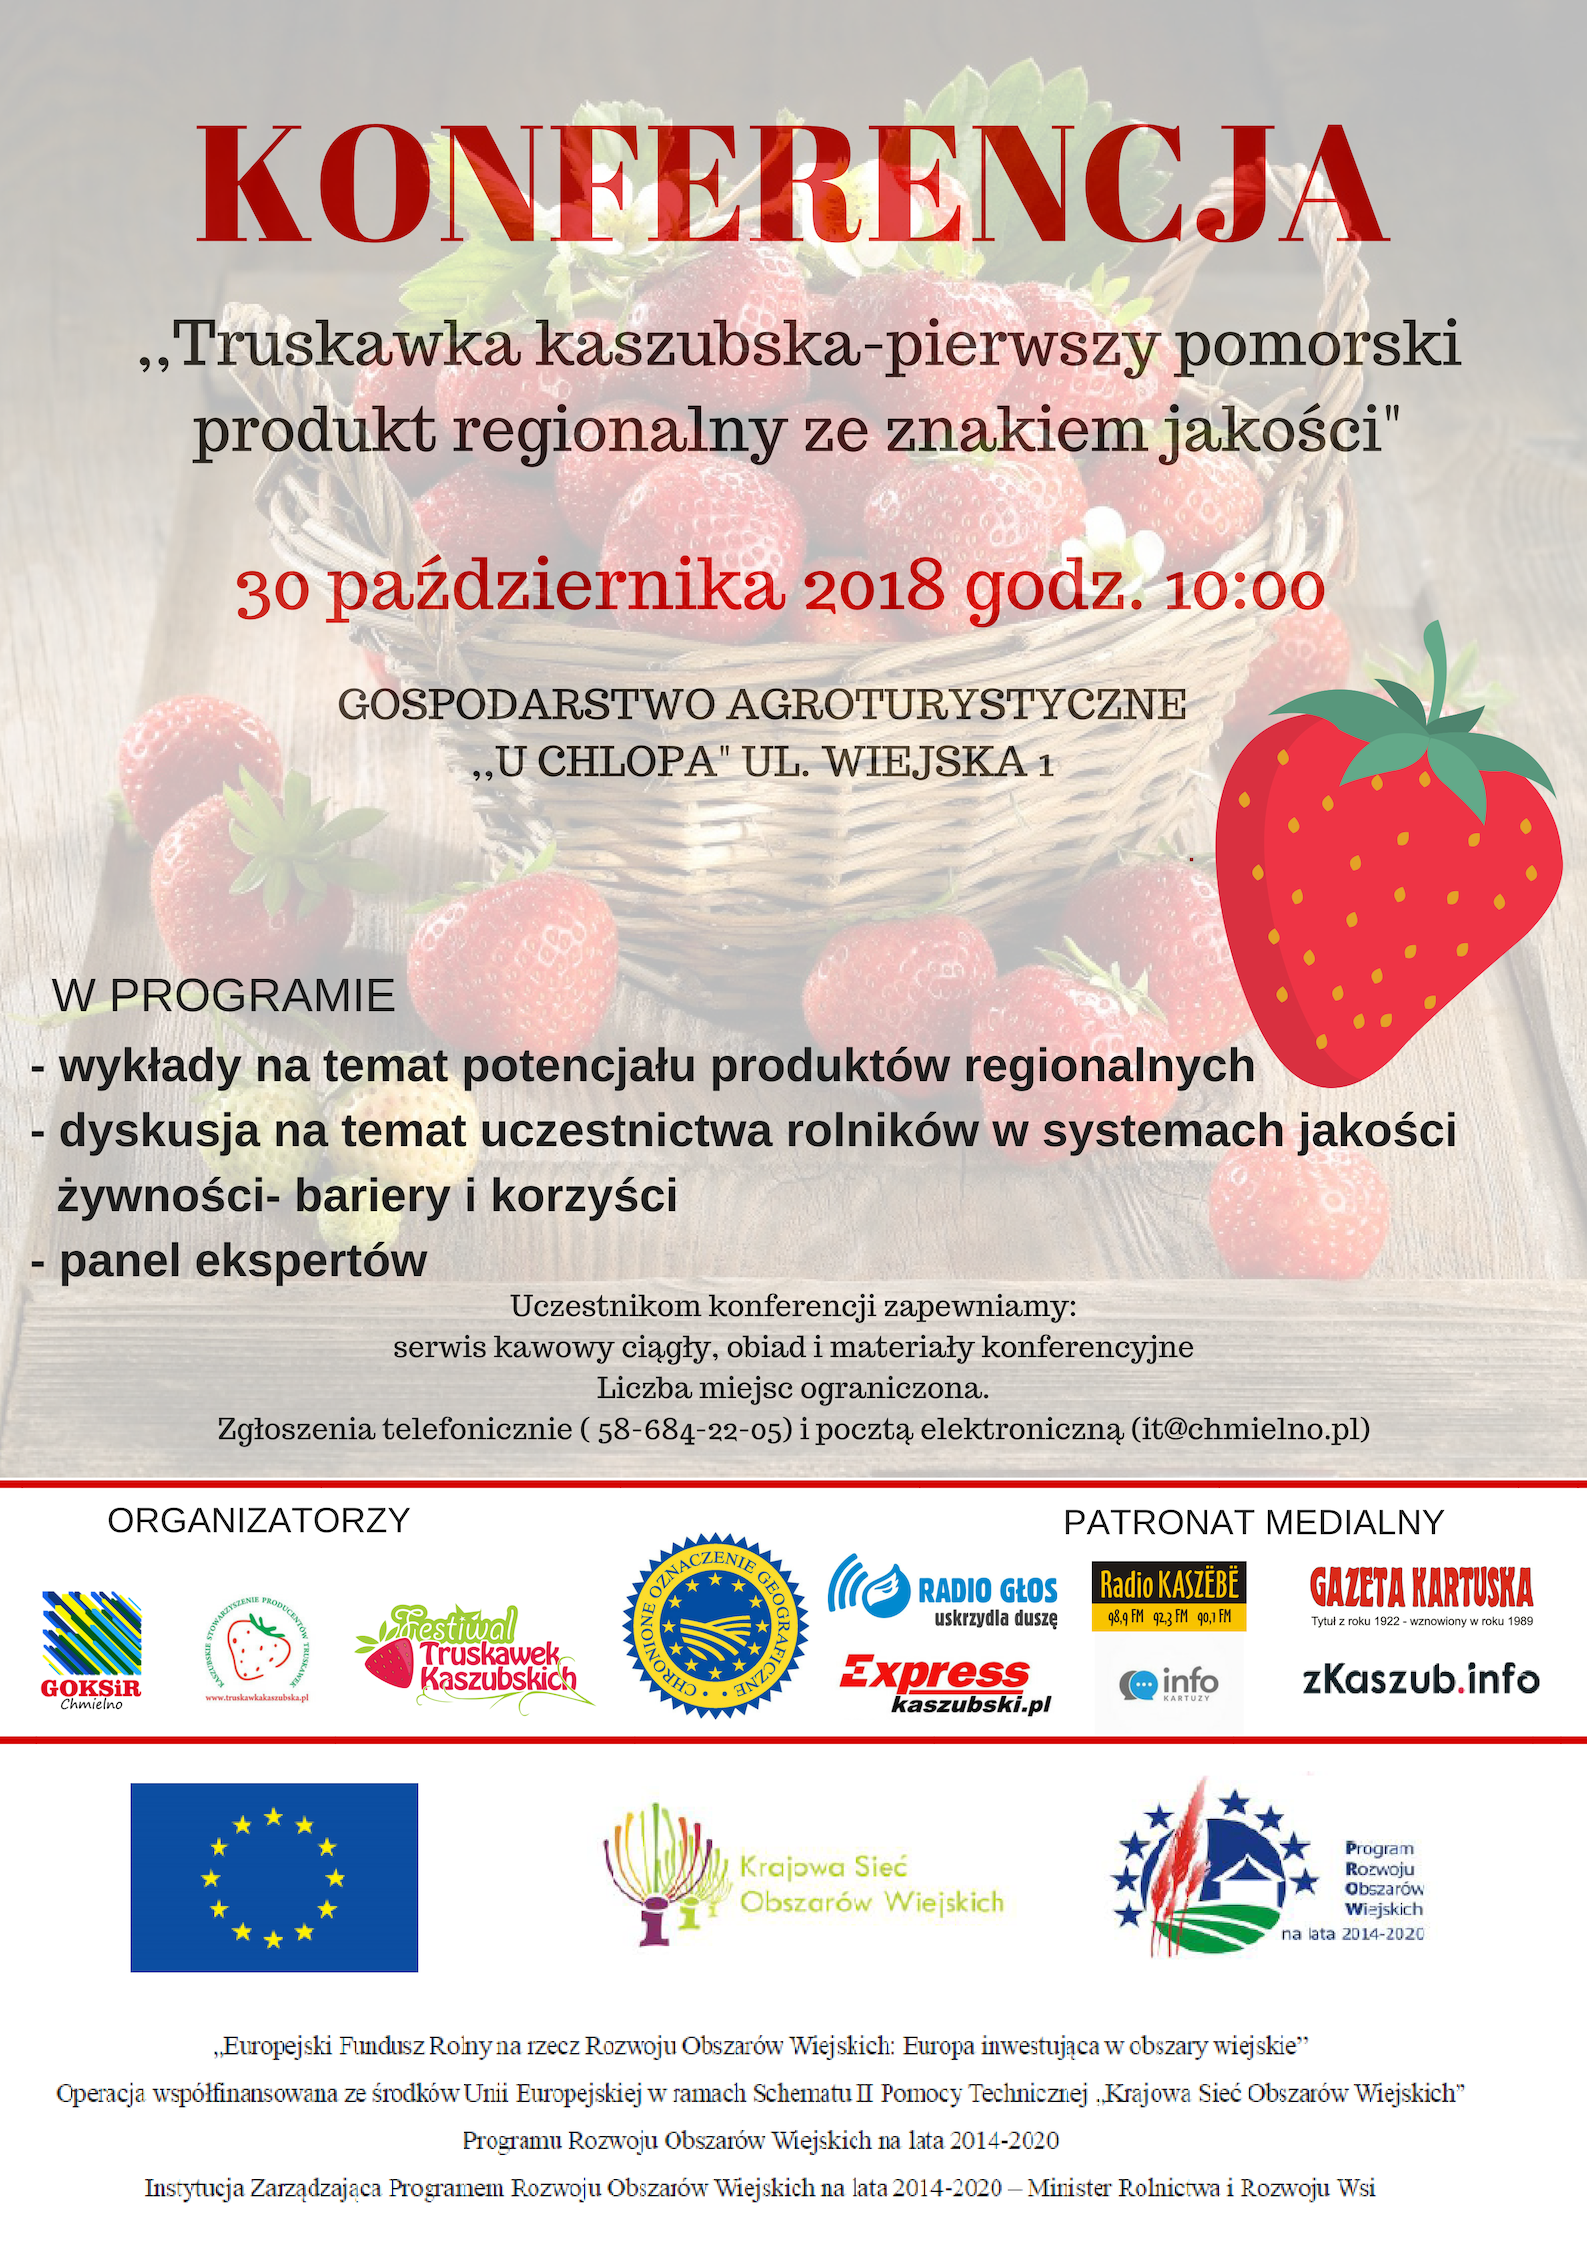 Konferencja "Truskawka kaszubska- pierwszy pomorski produkt regionalny ze znakiem jakości"